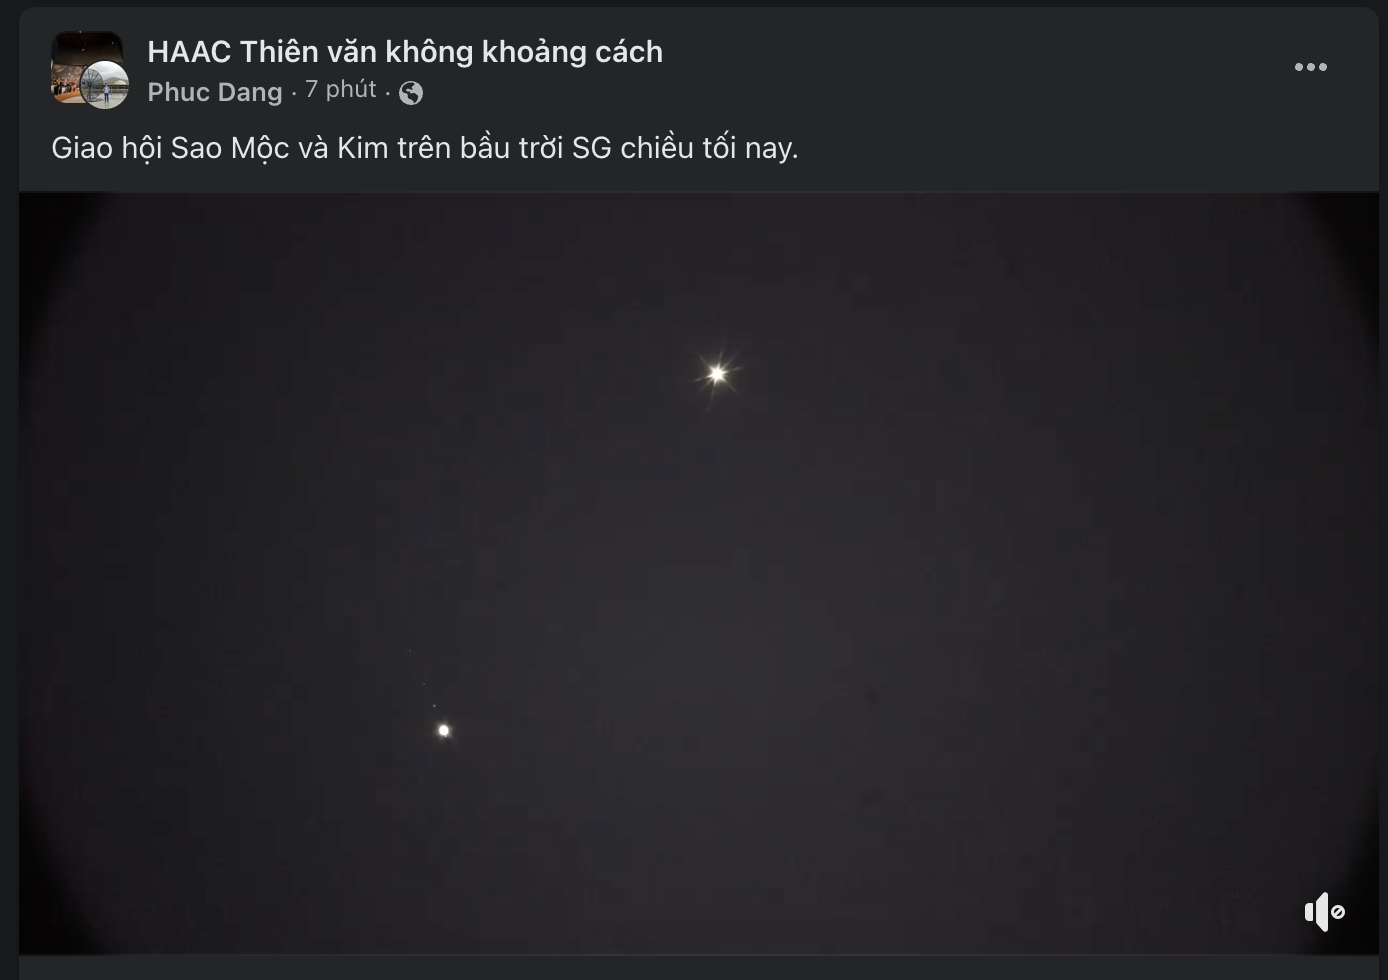 Người Việt thích thú quan sát sao Mộc và sao Kim giao hội trên bầu ...